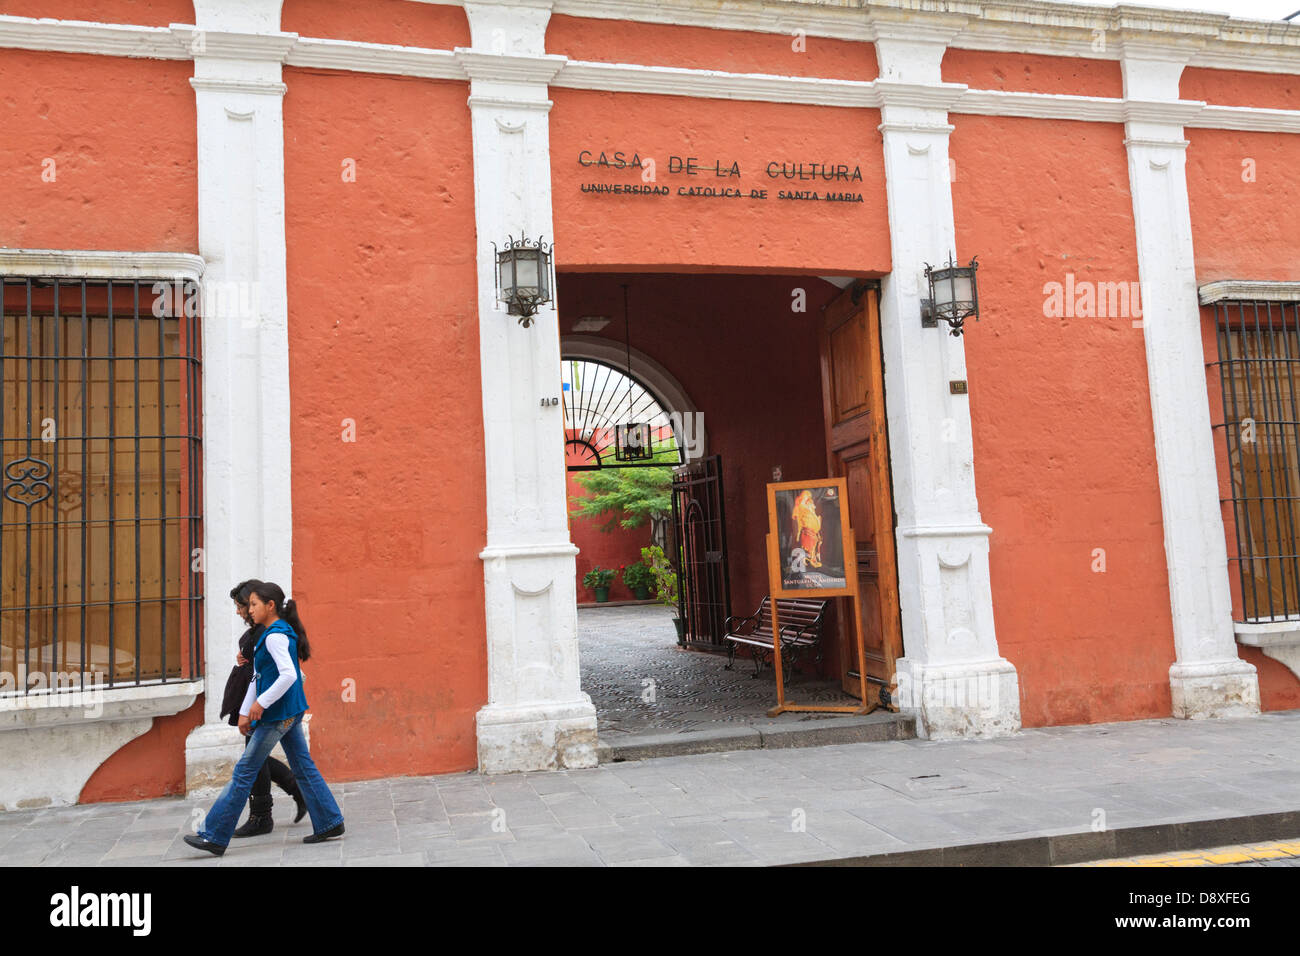 Museo Santuarios Andinos, Casa de la Cultura, Arequipa, Peru Stock Photo